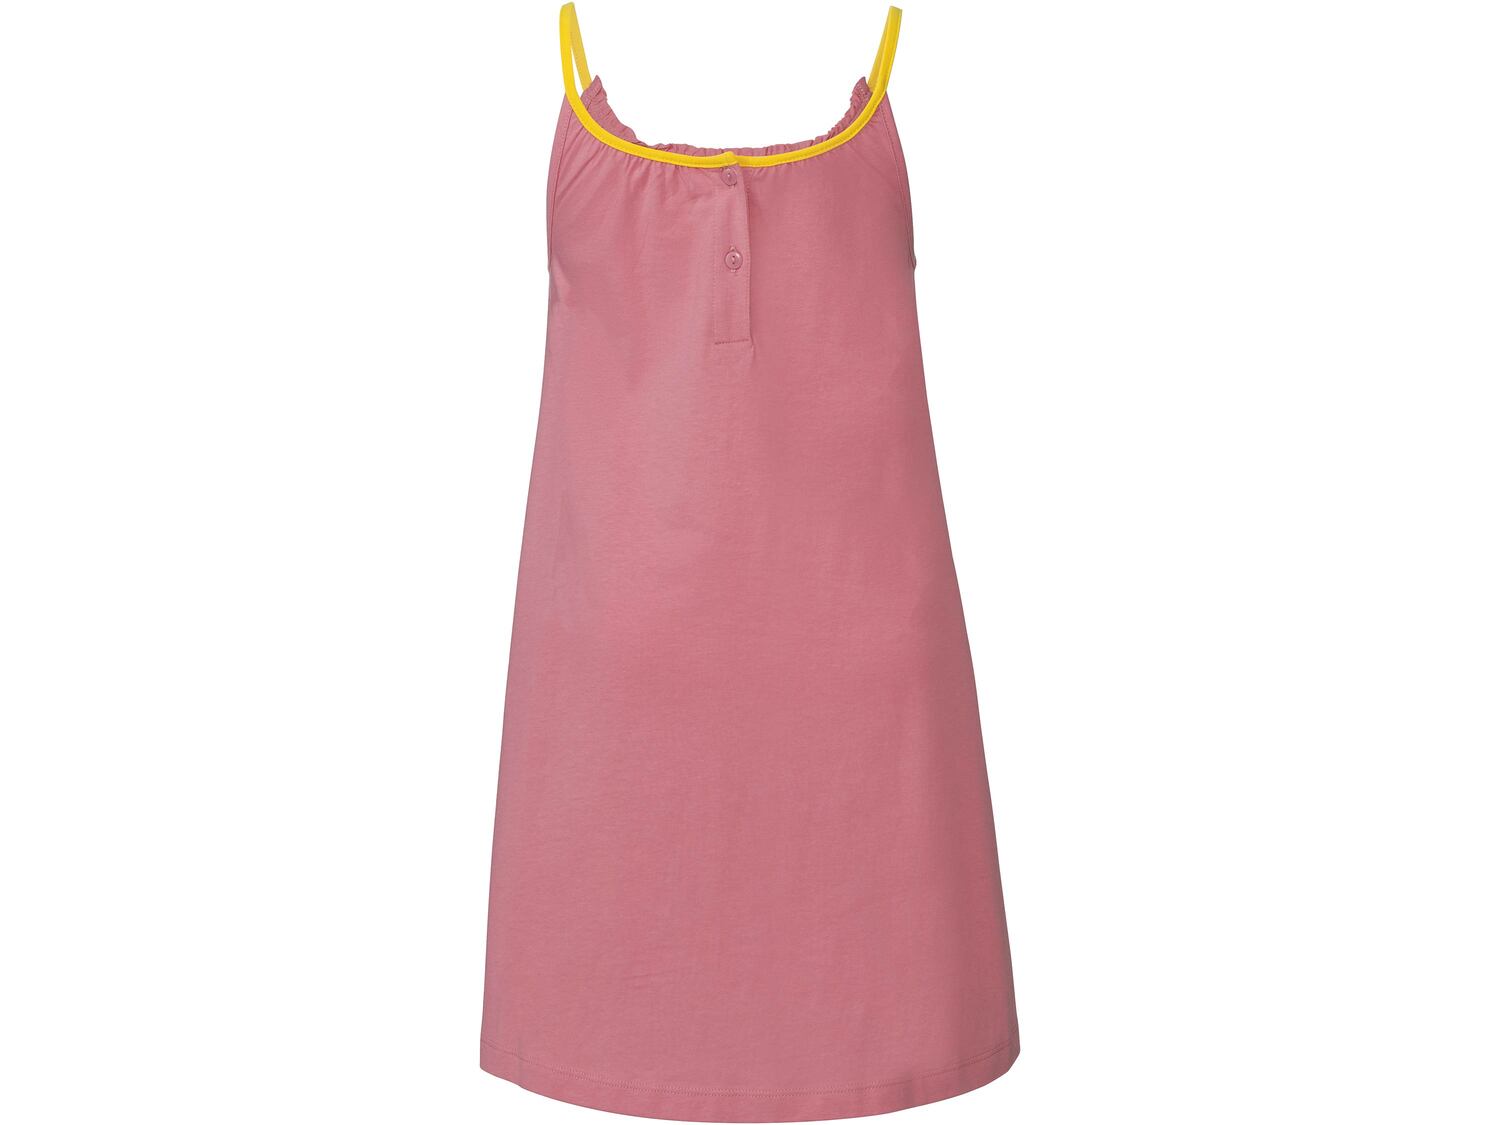 Sukienka plażowa dziewczęca , cena 19,99 PLN 
rozmiary: 122-164 
- 100% bawełny
Opis

- ...